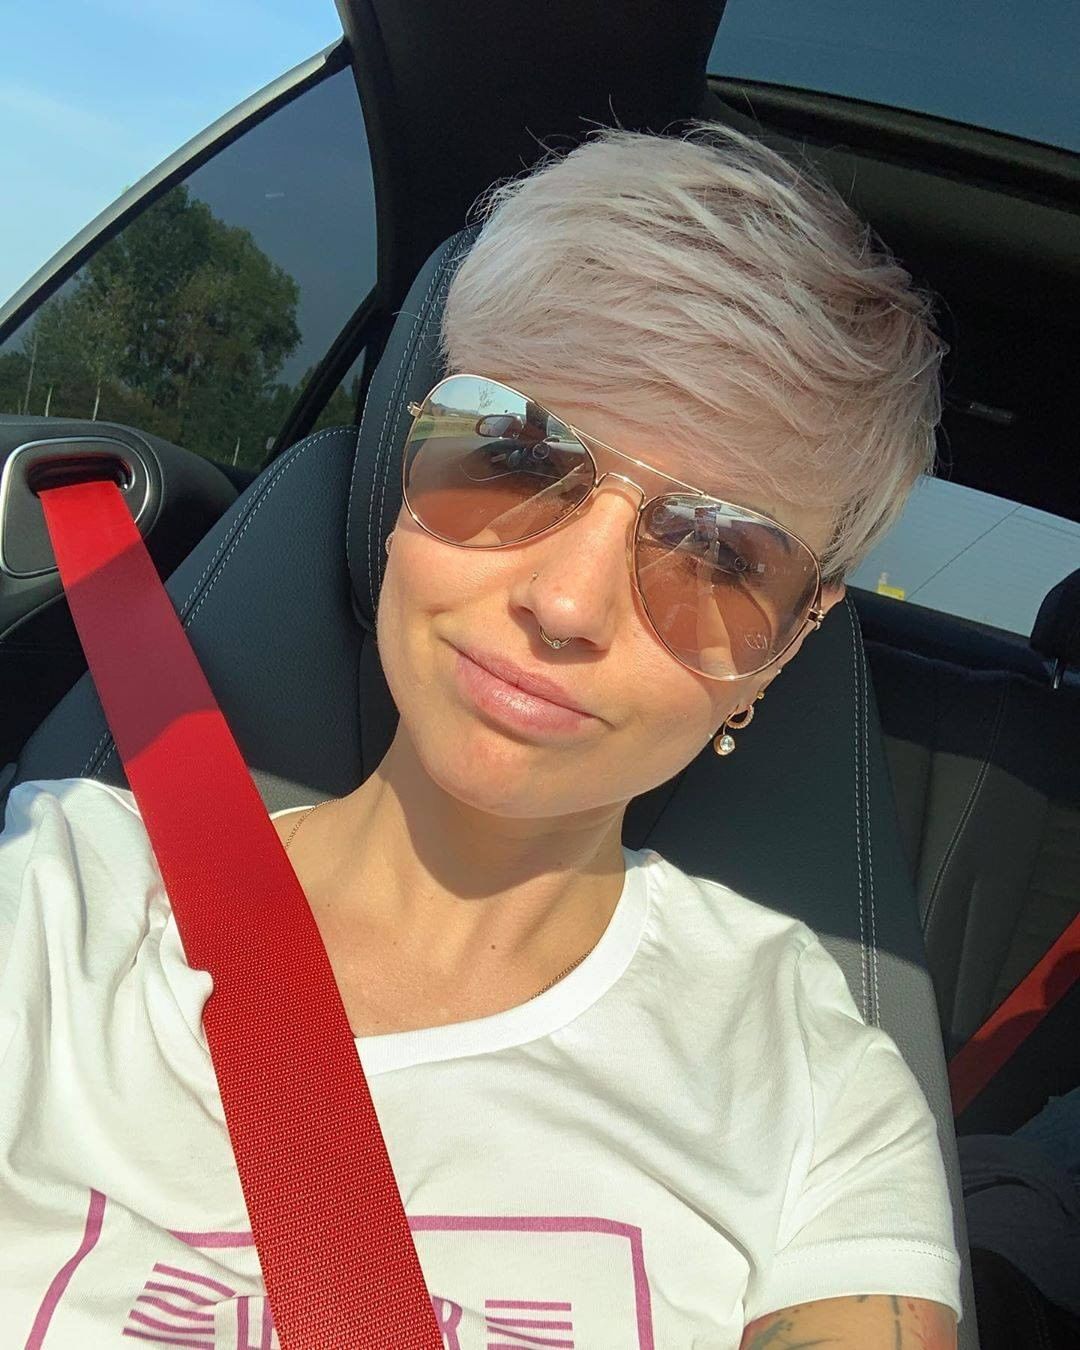 Pixie selfie in auto